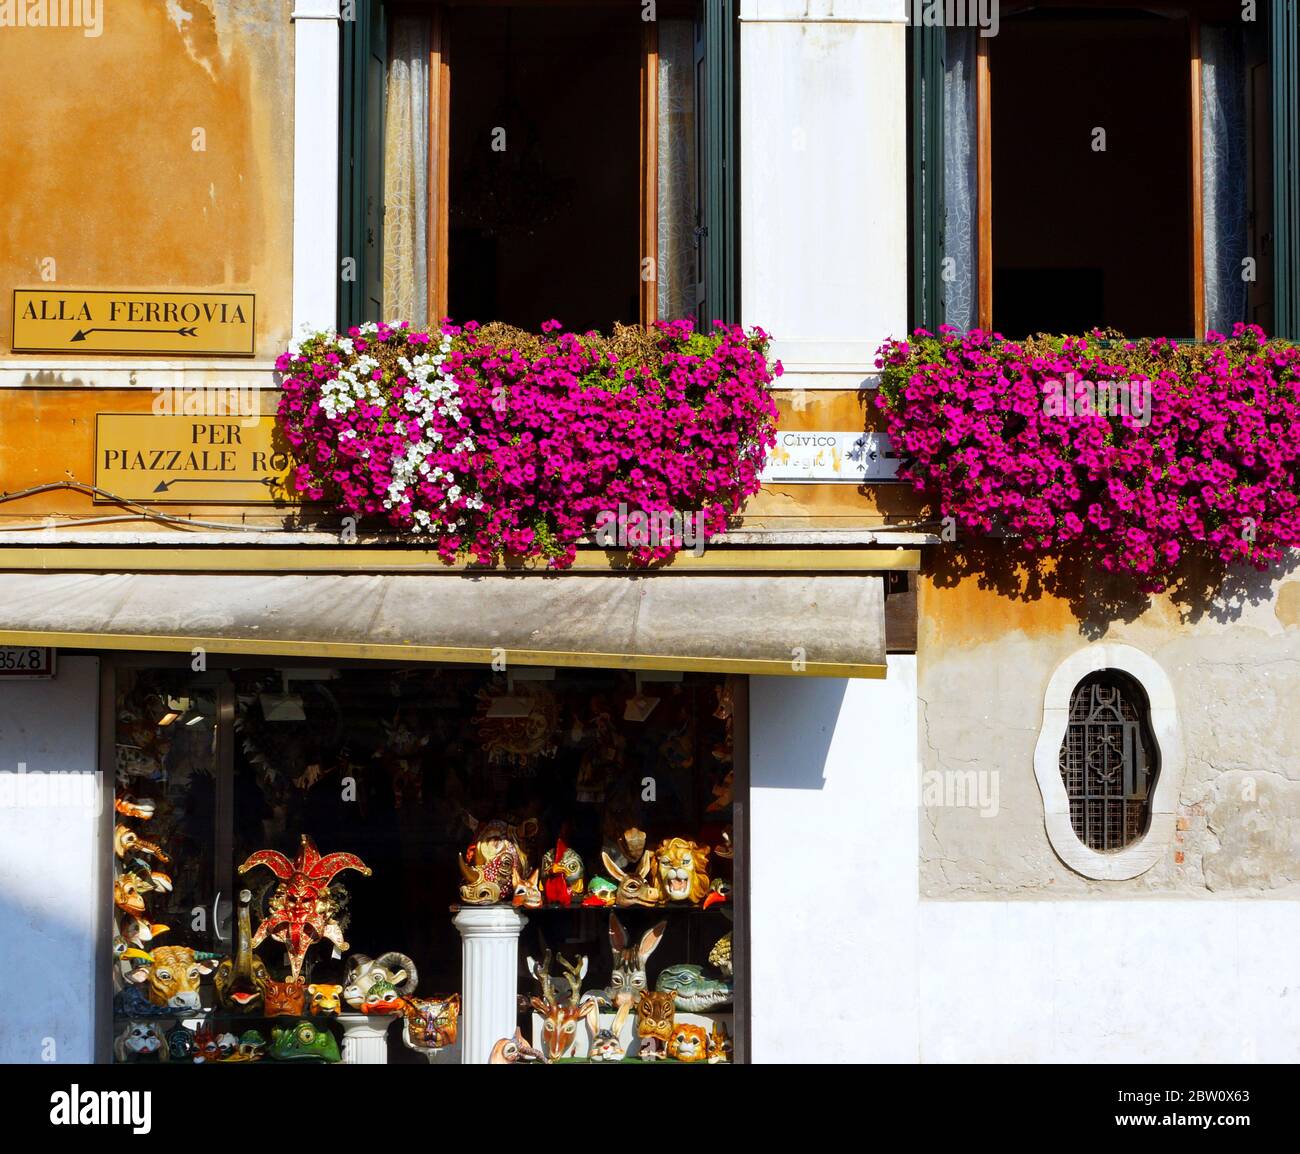 Venedig, ein Traumziel in Italien, wird einer der schönsten Städte der Welt zugeschrieben. Bunte Blumen blühen an den Fenstern. Stockfoto